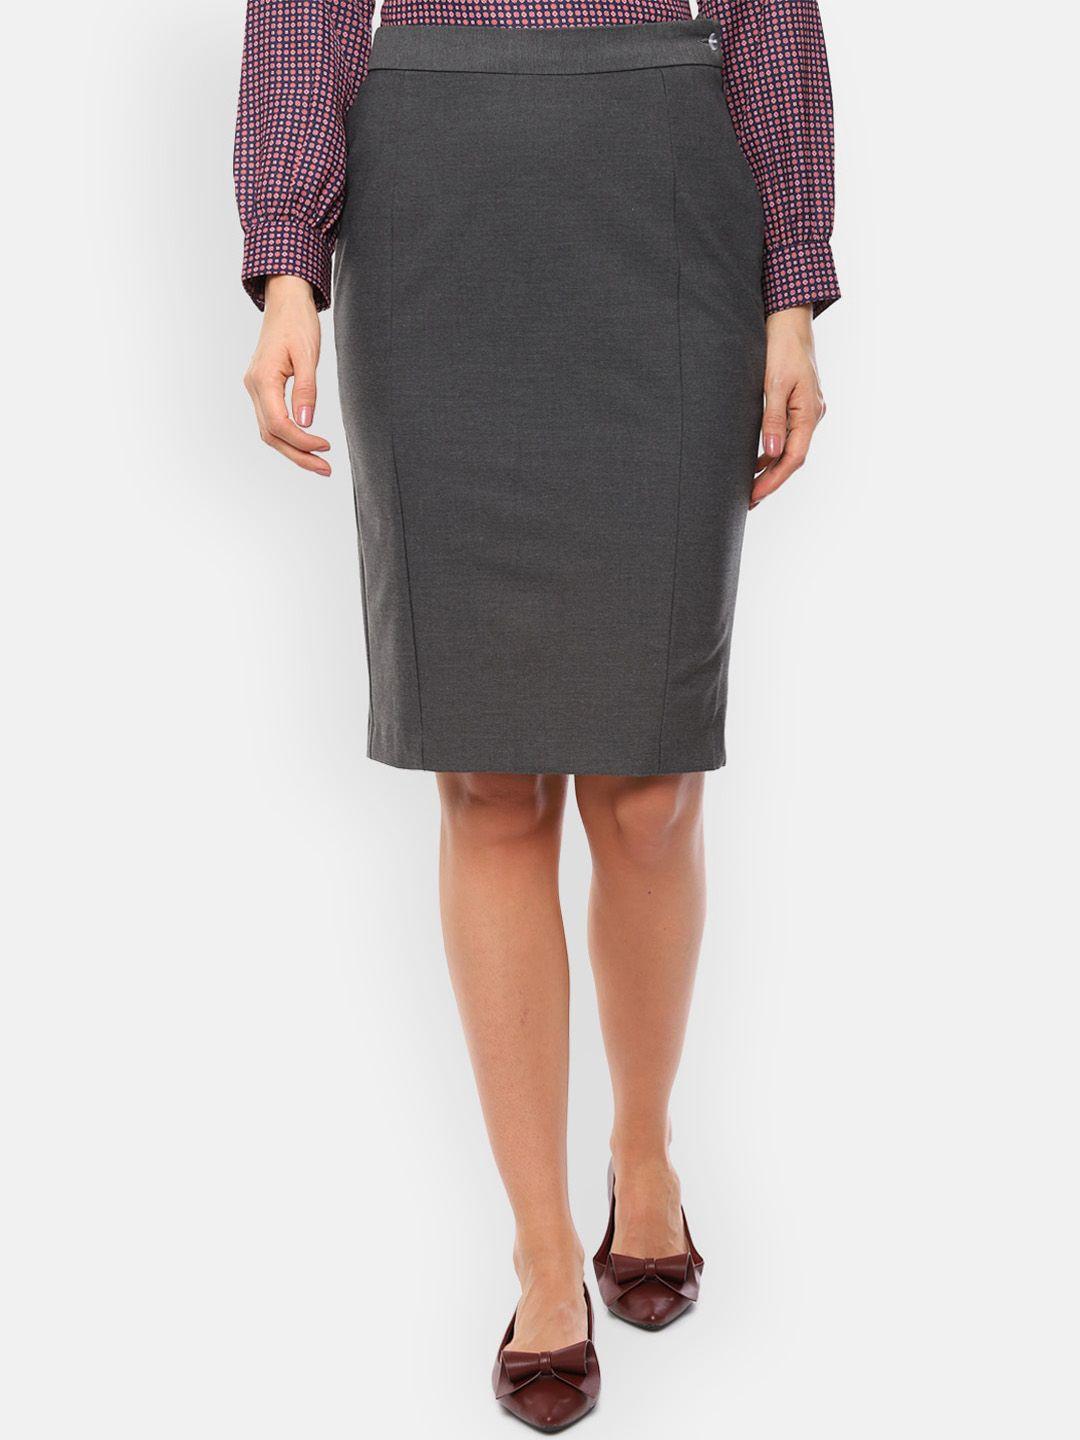 Van Heusen Grey Solid Pencil Skirt